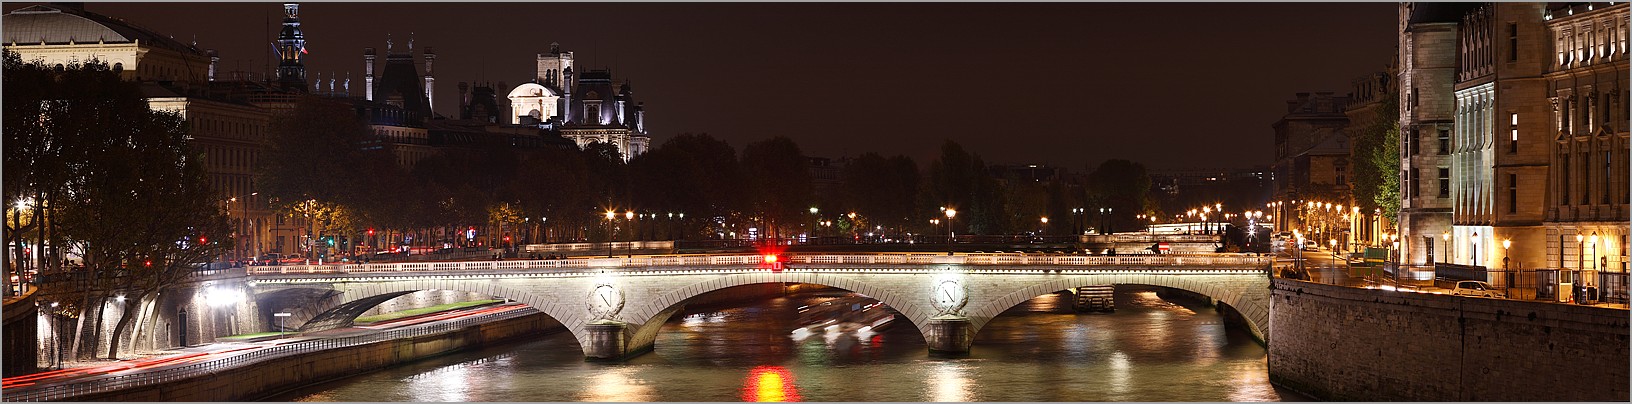 La Seine et le Pont au Change - PARIS (CANON 5D + EF 200mm F2,8 L II)